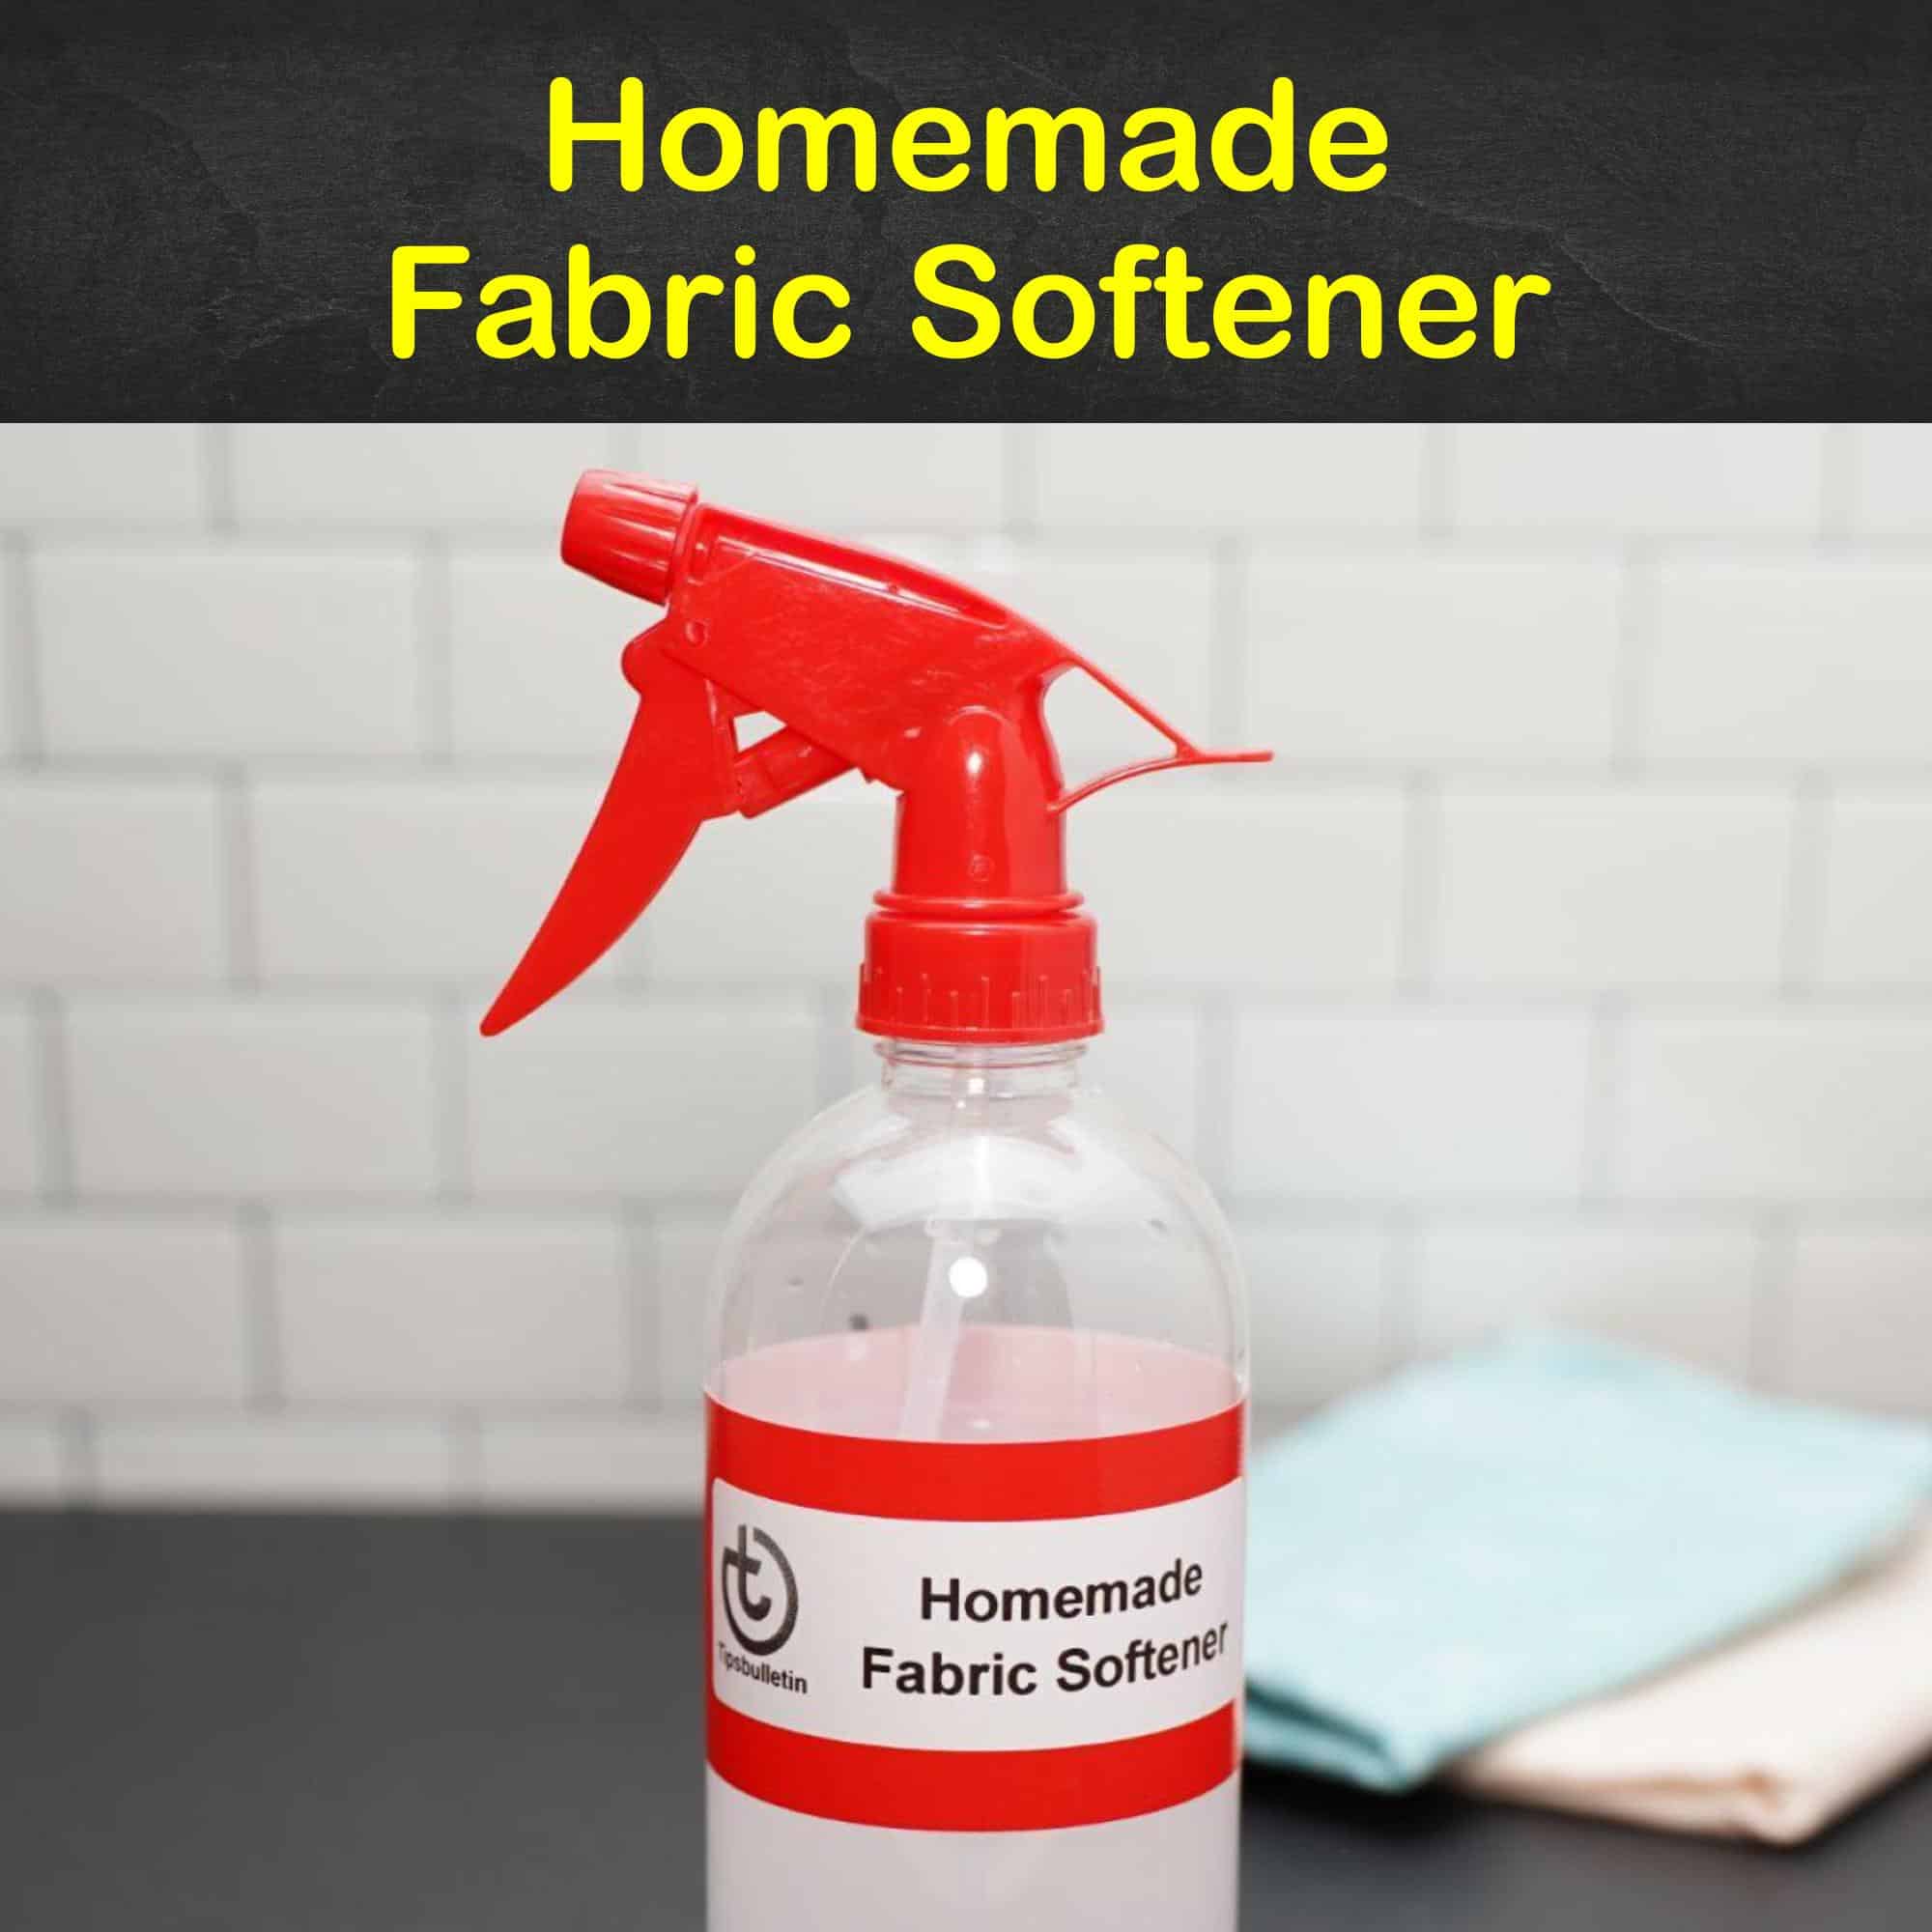 Homemade Fabric Softener